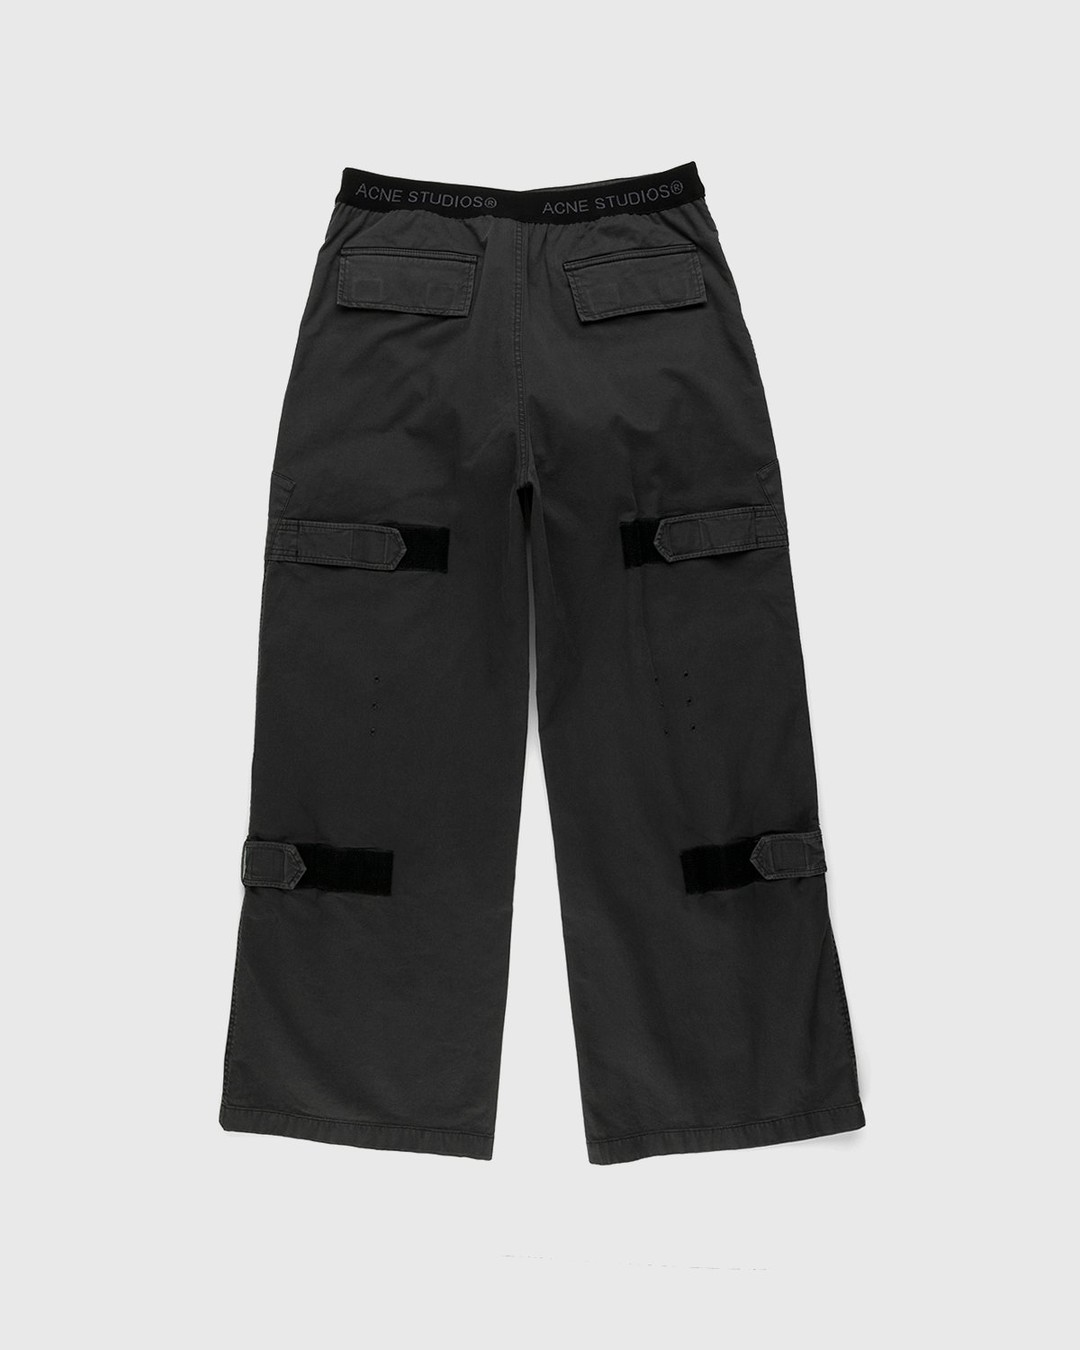 Acne Studios – Chevron Cargo Pants Anthracite Grey - Pants - Grey - Image 2